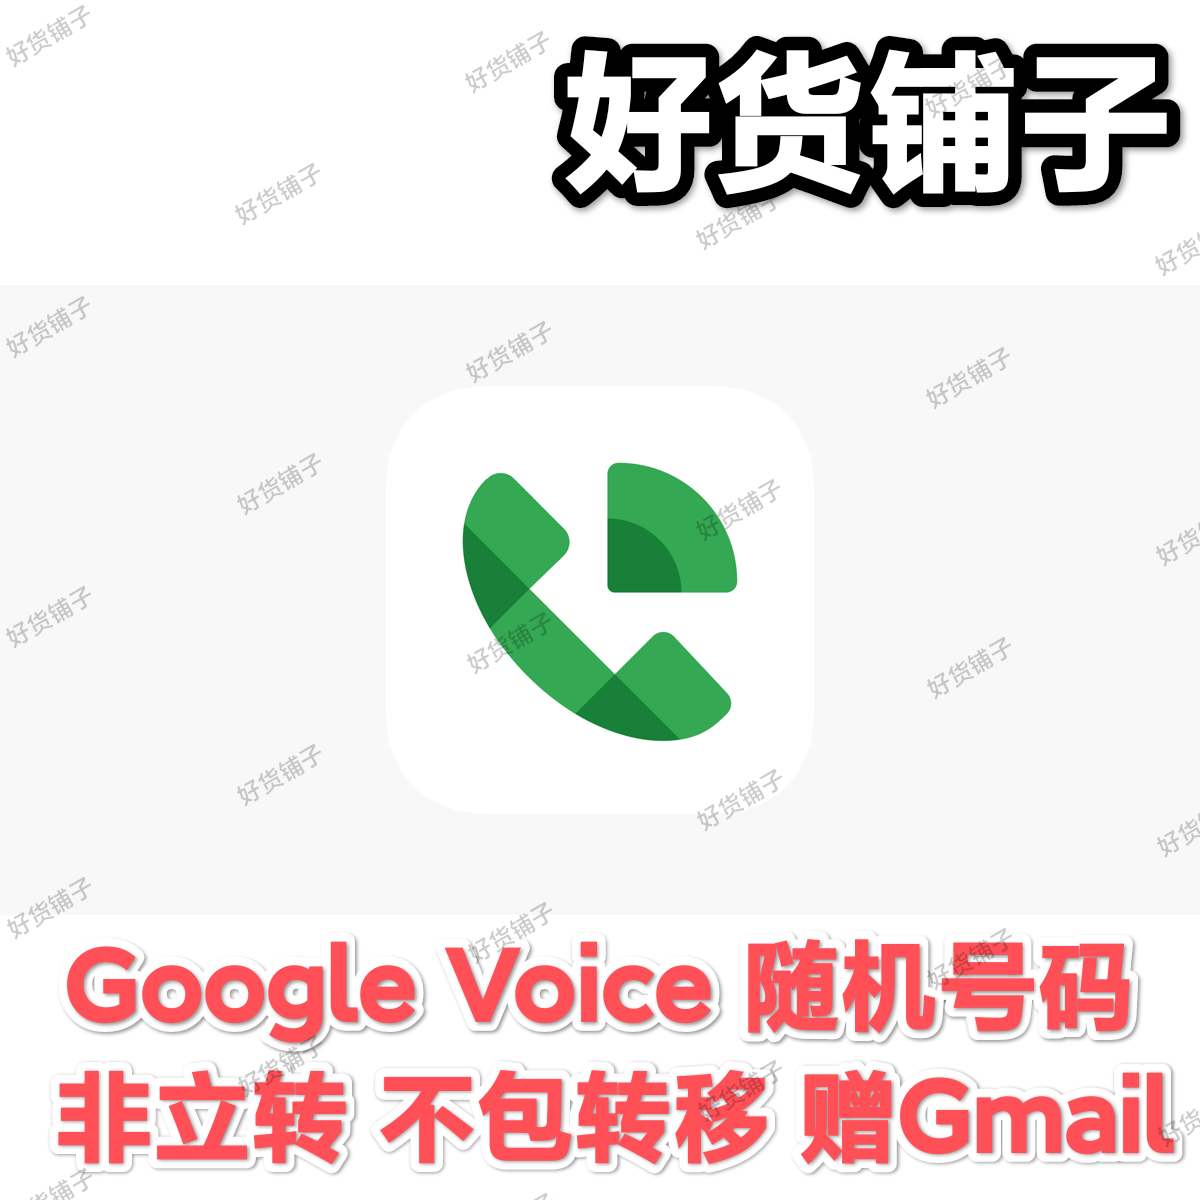 Google Voice随机号码（附赠Gmail邮箱）(非秒发货，48小时内发）（发货后一小时内请马上登录测试，如有问题可联系客服更换）